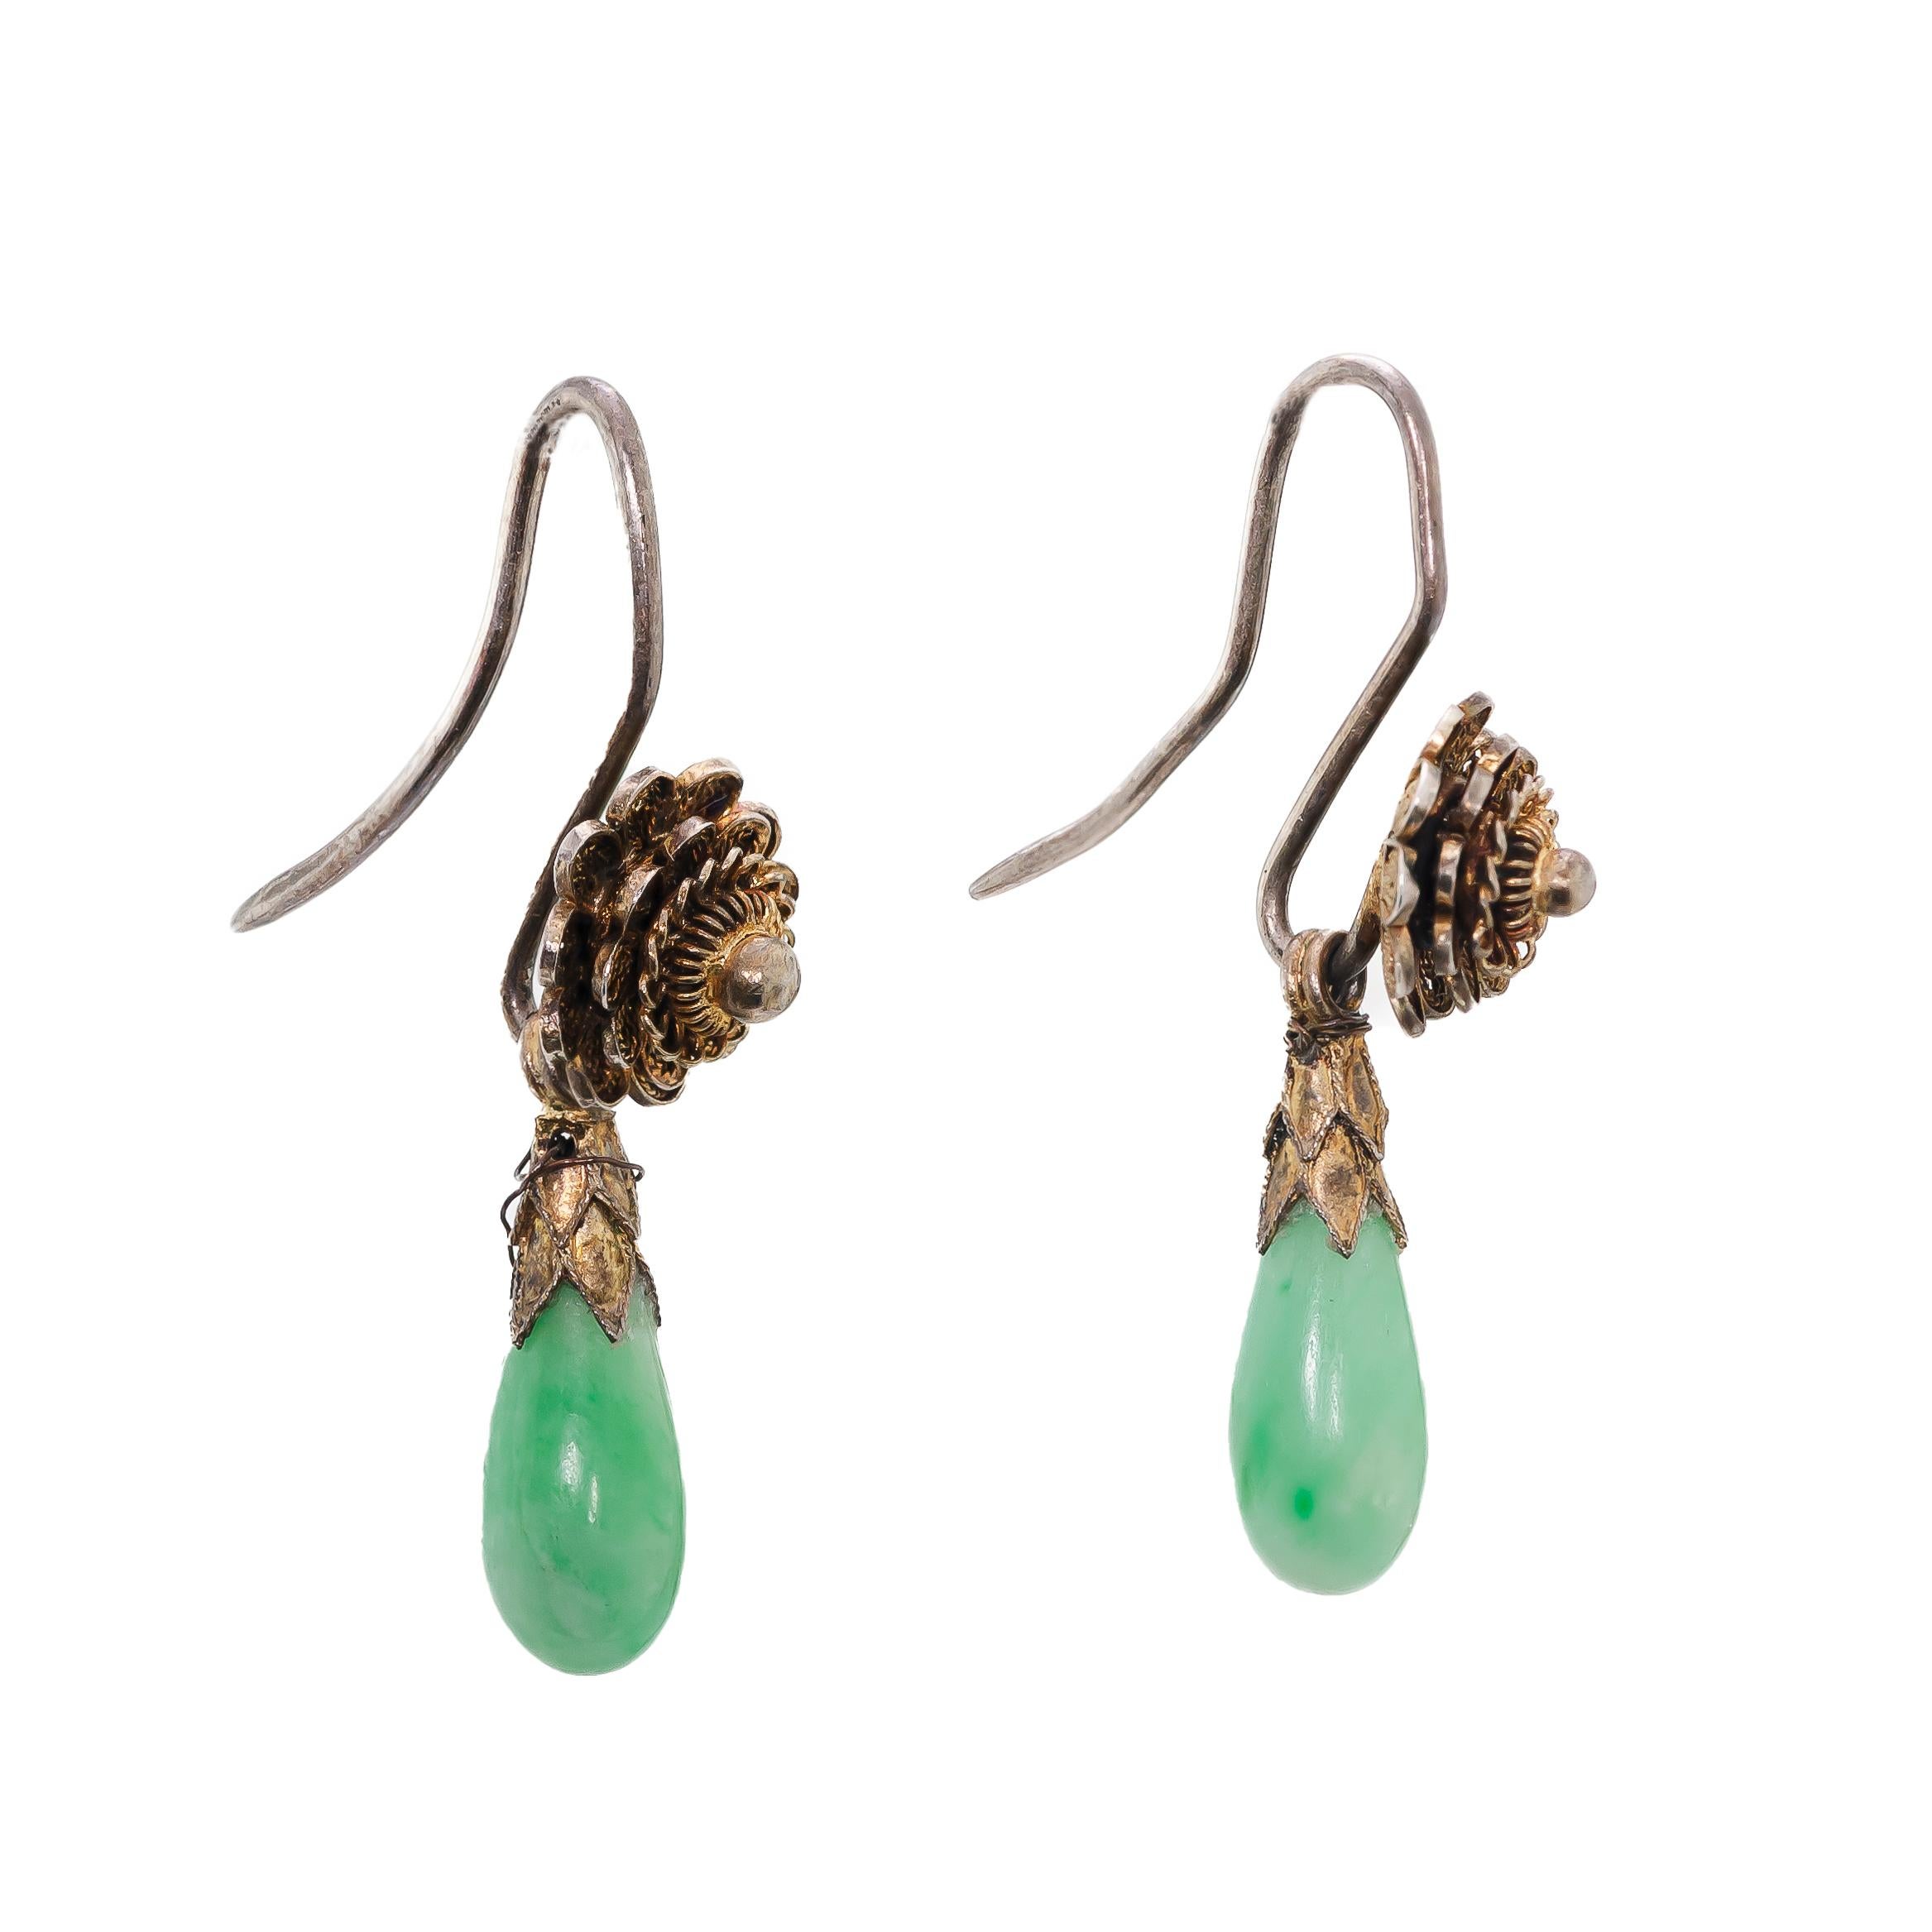 Schöne Vintage-Ohrringe aus Jade und Silbervergoldung mit zwei (2) Jade-Tropfen von ca. 10,5 mm Länge, die von einer vergoldeten Silberblume und einem vergoldeten Hirtenhaken getragen werden.